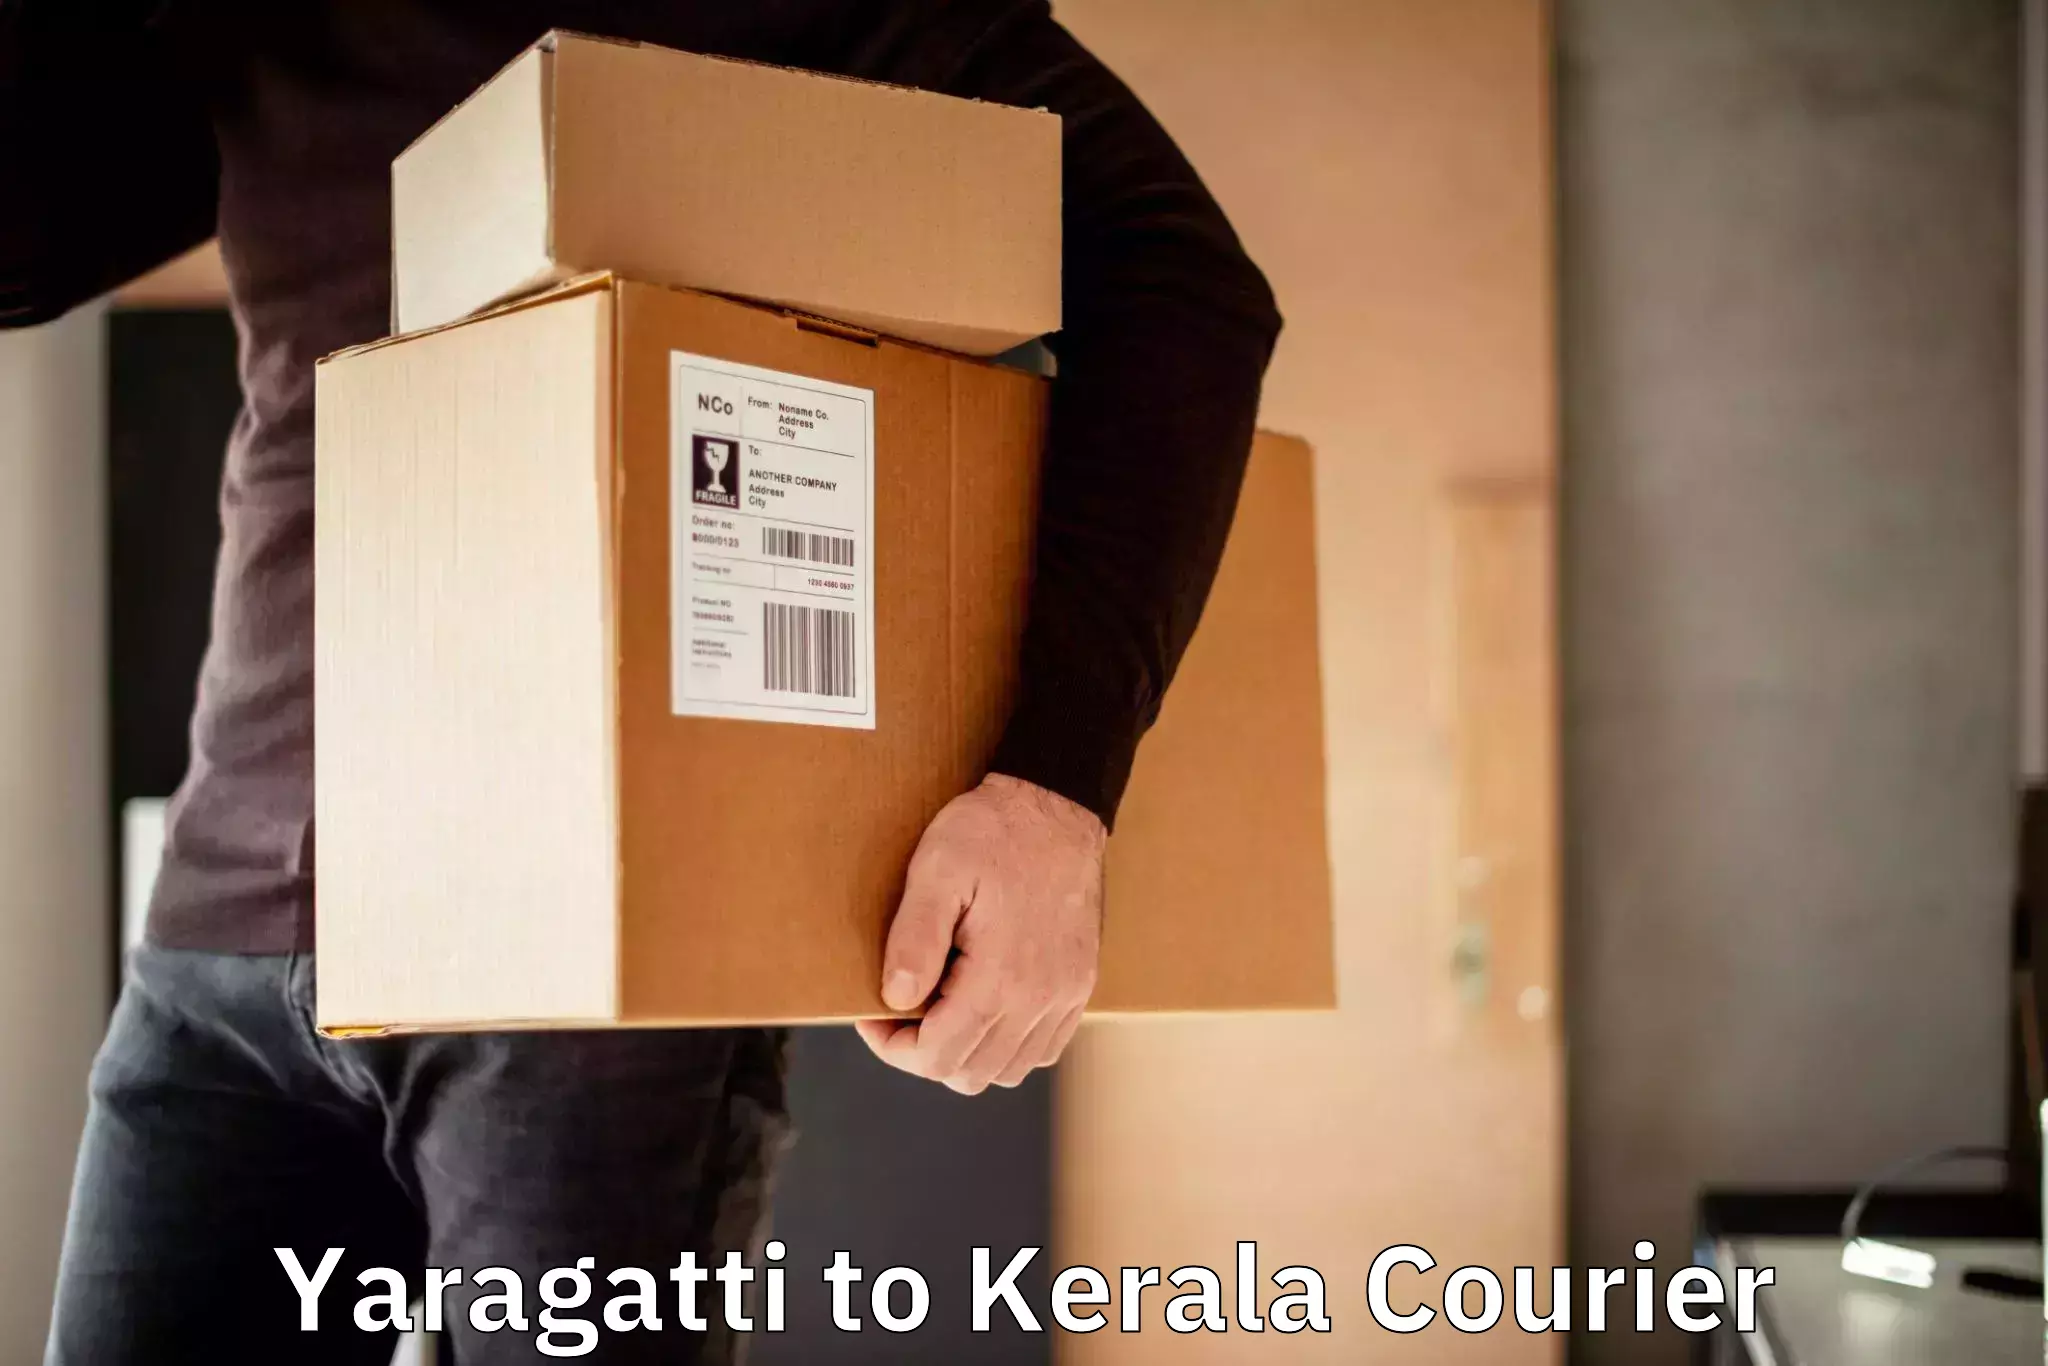 Bulk shipping discounts Yaragatti to Mahatma Gandhi University Kottayam